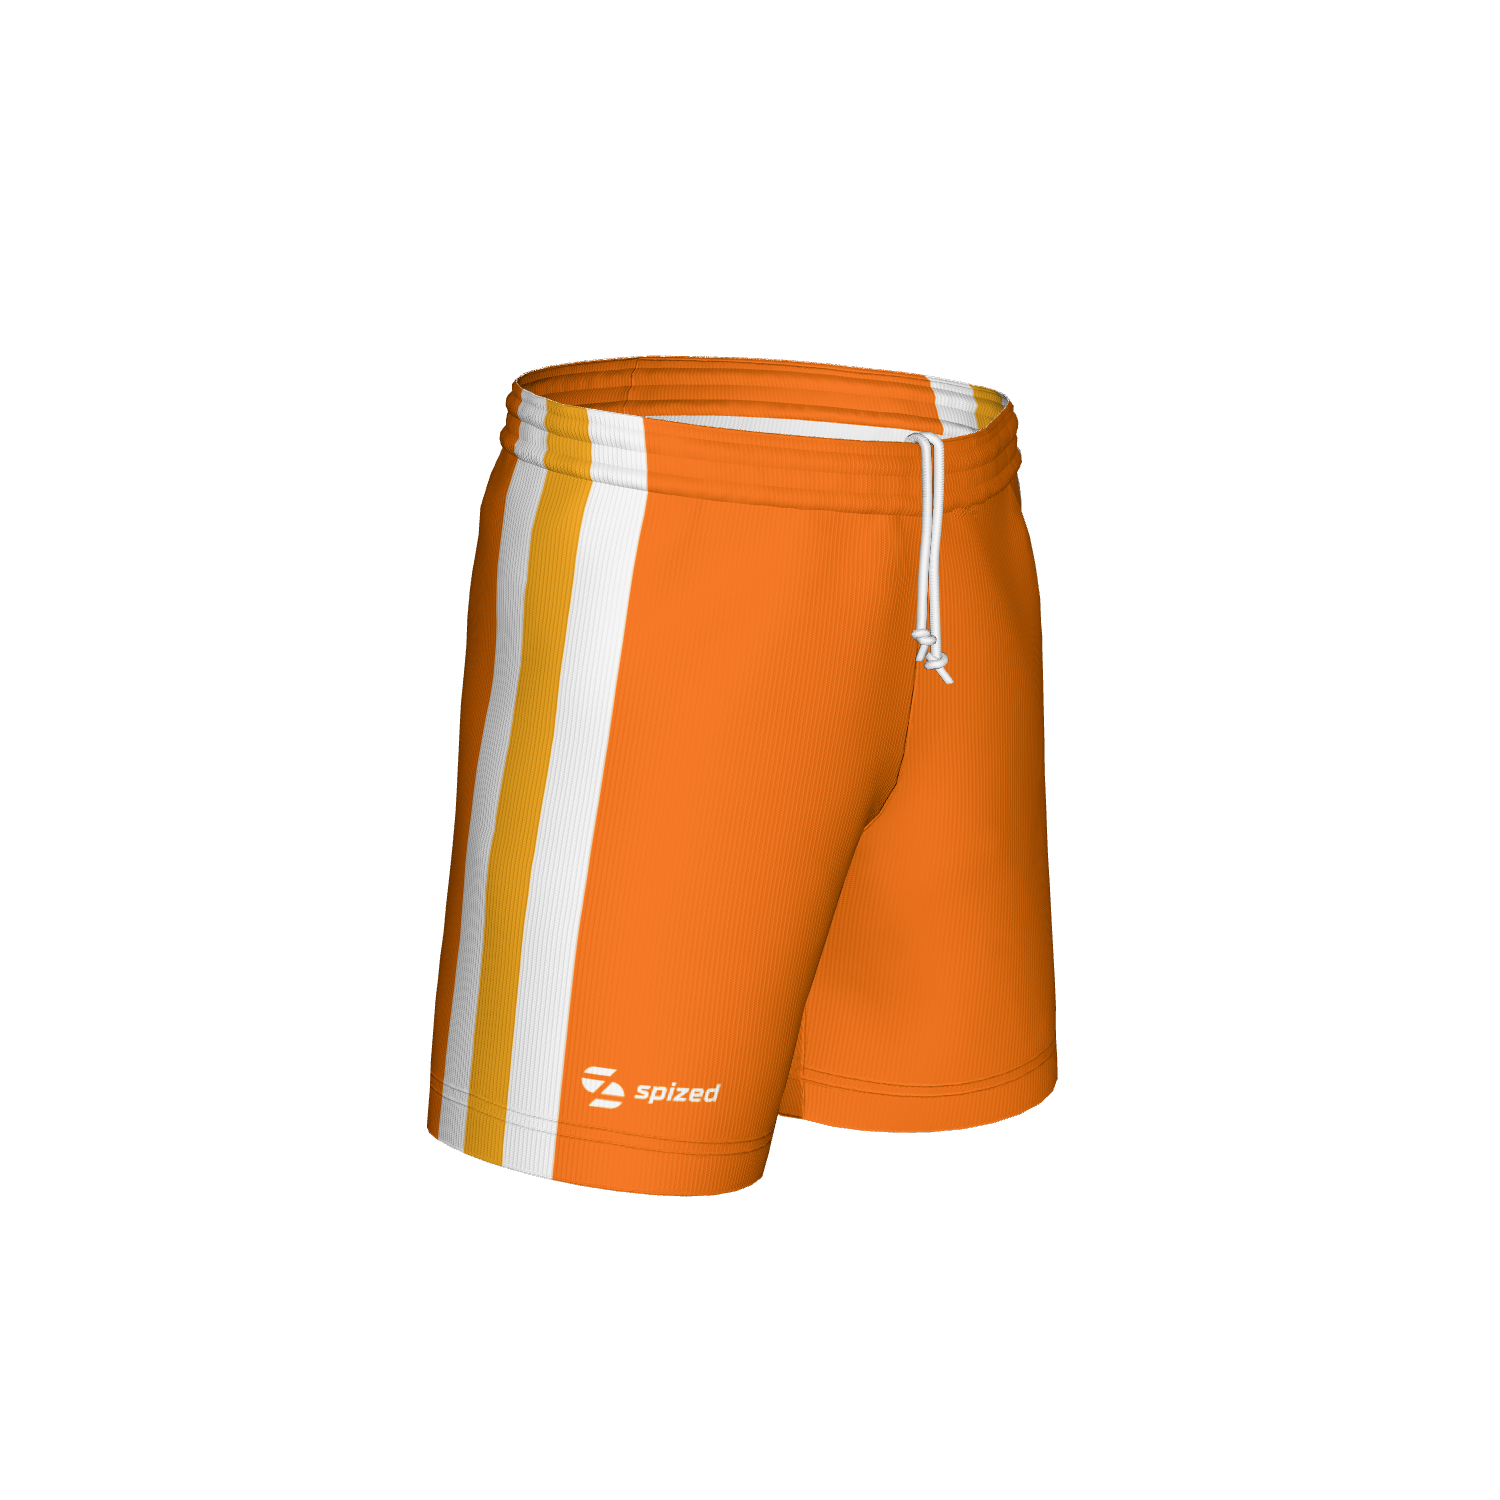 Paulo children’s football shorts